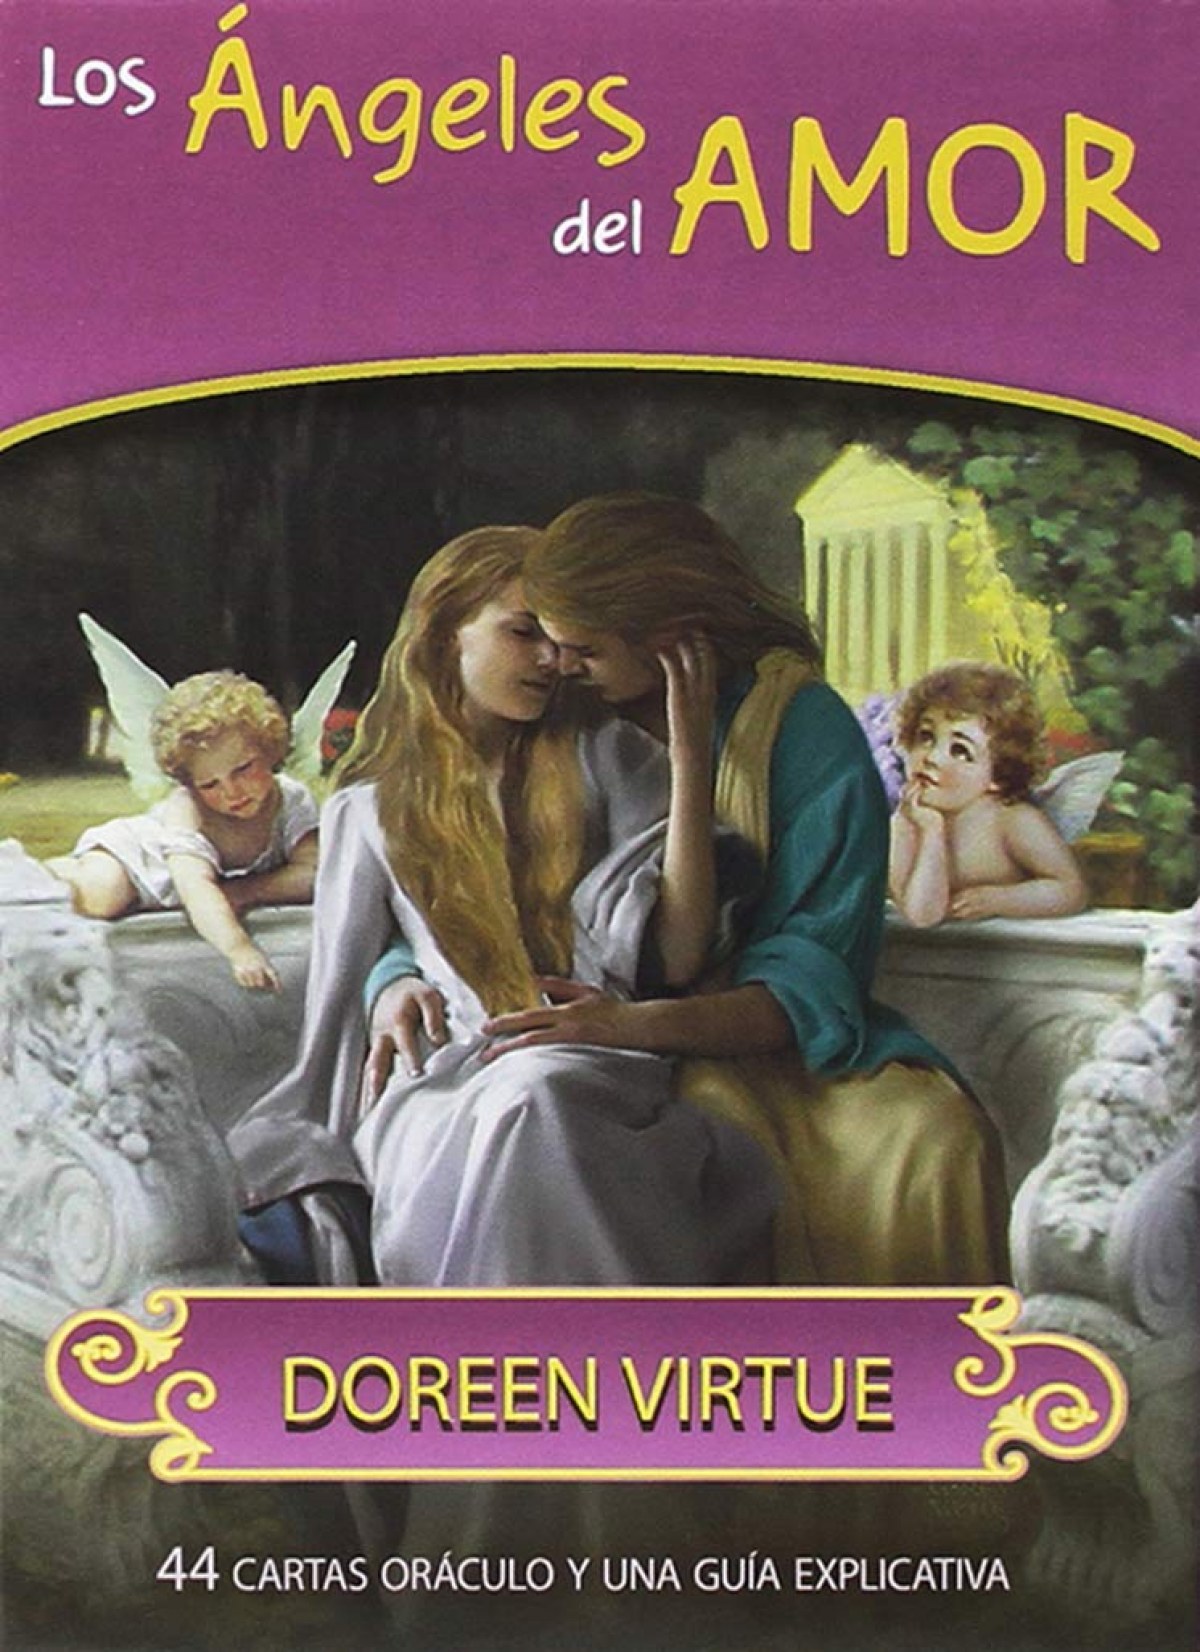 LOS ANGELES DEL AMOR 44 cartas oráculo yuna guía explicativa - Virtue Doreen